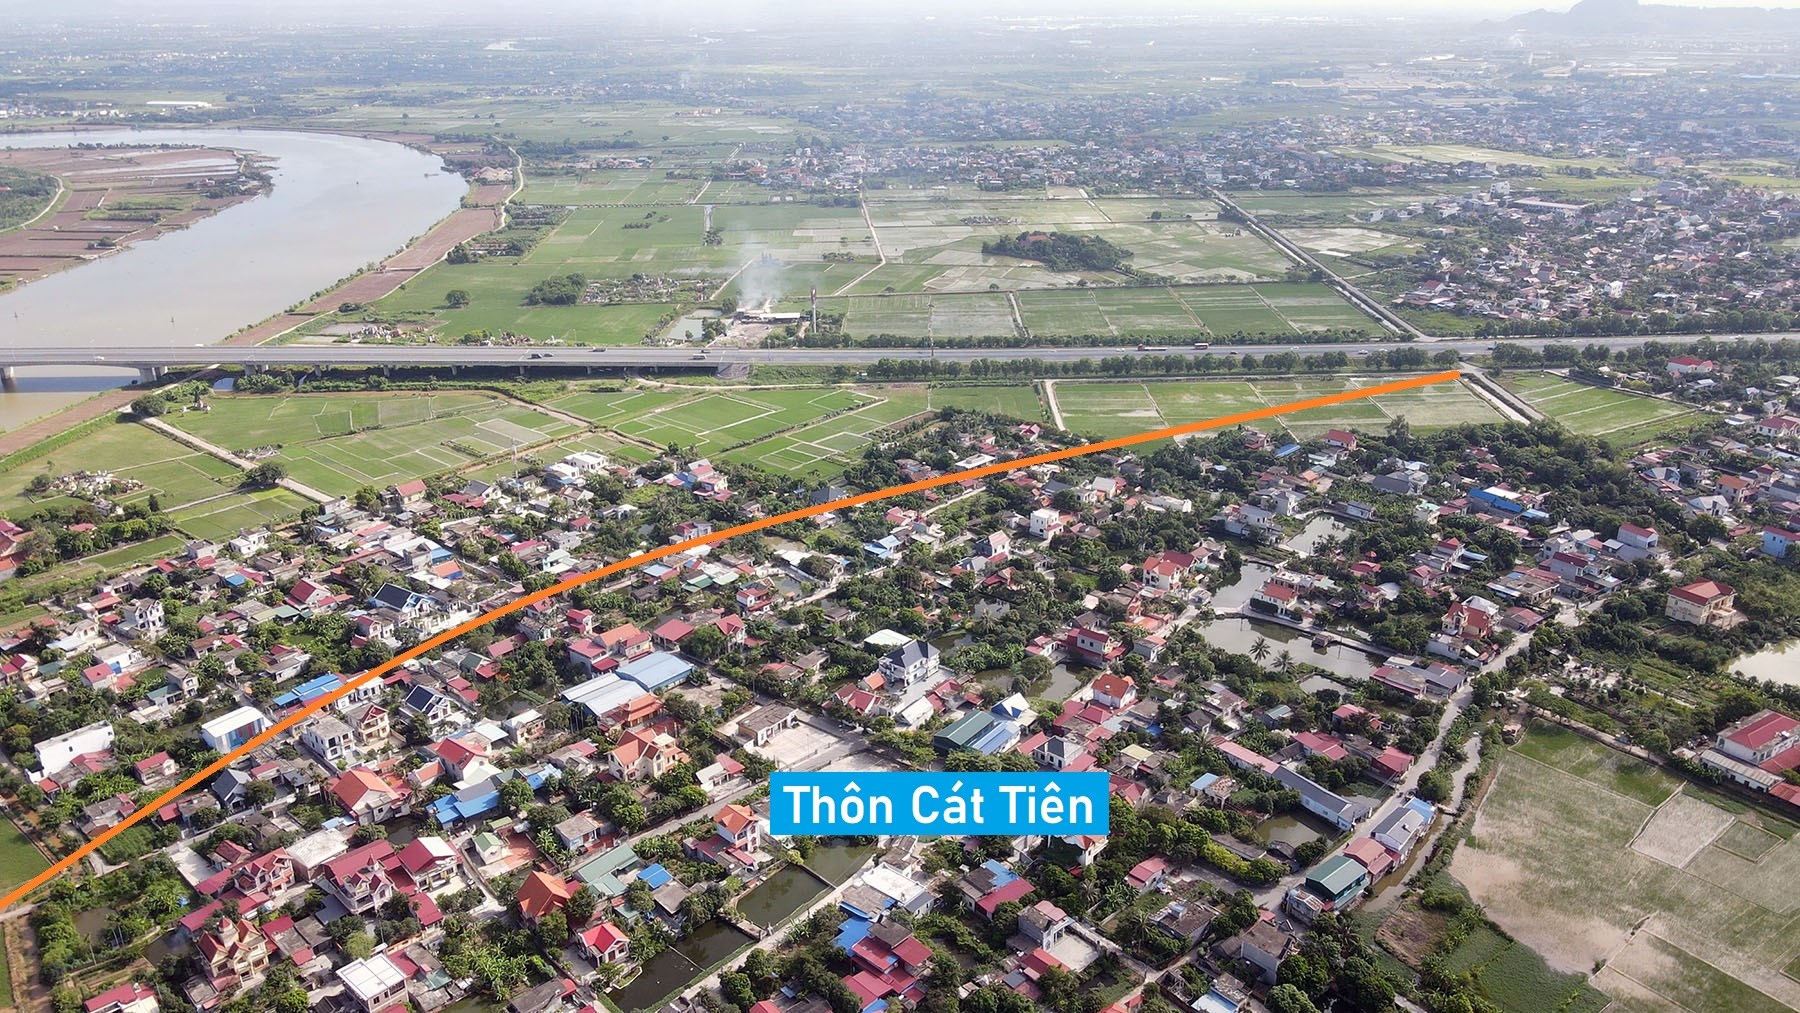 Toàn cảnh vị trí có thể xây cầu đường sắt vượt sông Văn Úc nối huyện Tiên Lãng - An Lão, Hải Phòng